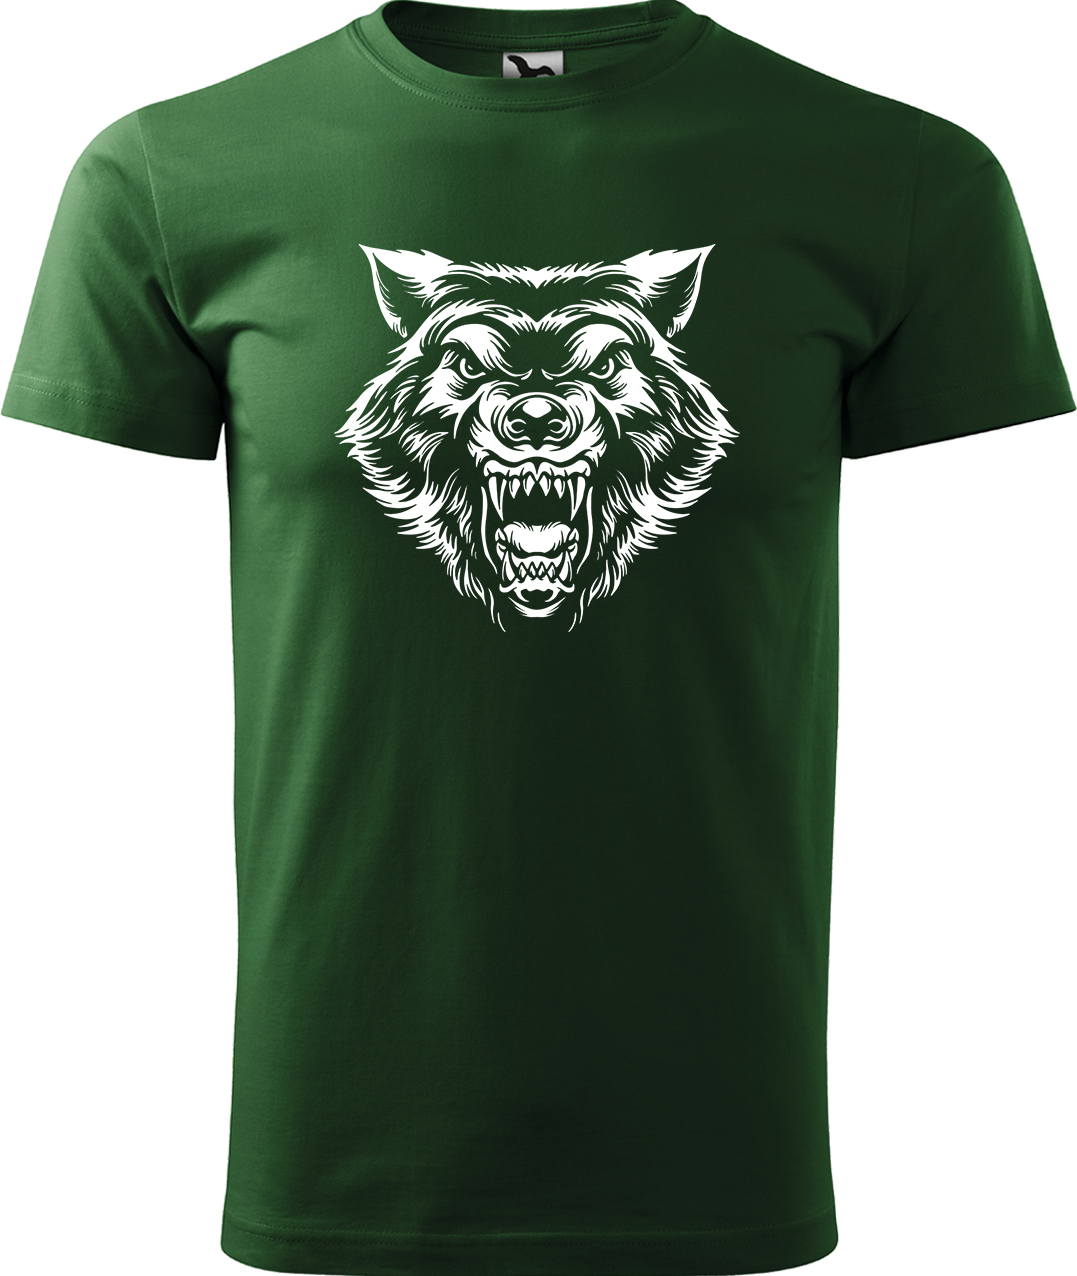 Pánské tričko s vlkem - Rozzuřený vlk Velikost: M, Barva: Lahvově zelená (06), Střih: pánský